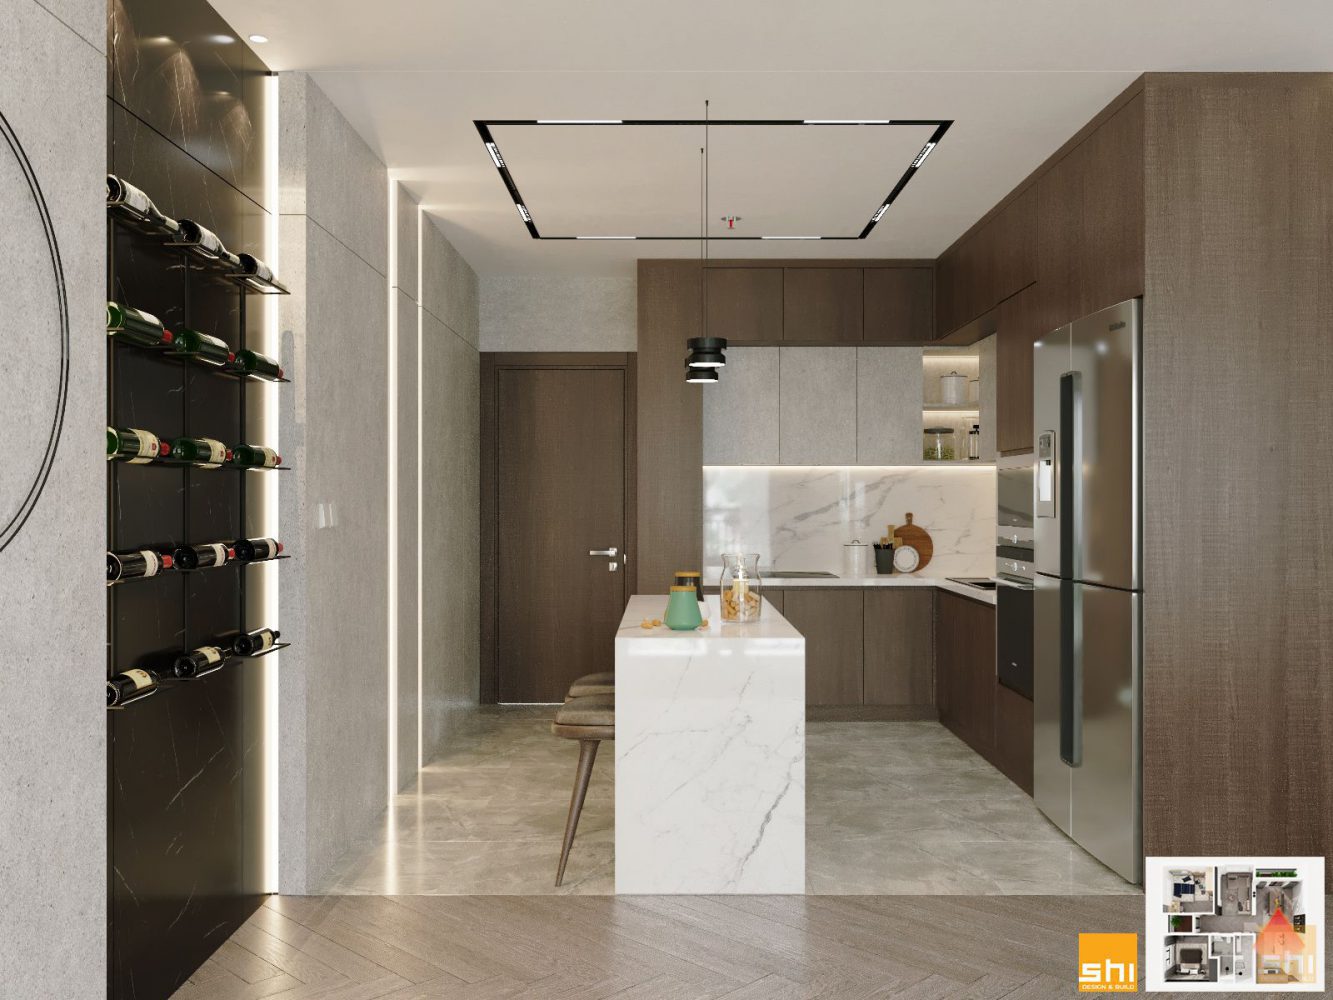 Thiết kế tủ bếp gỗ Veneer sang trọng trong căn hộ 3 phòng ngủ Vinhomes Grand Park do S-housing thiết kế